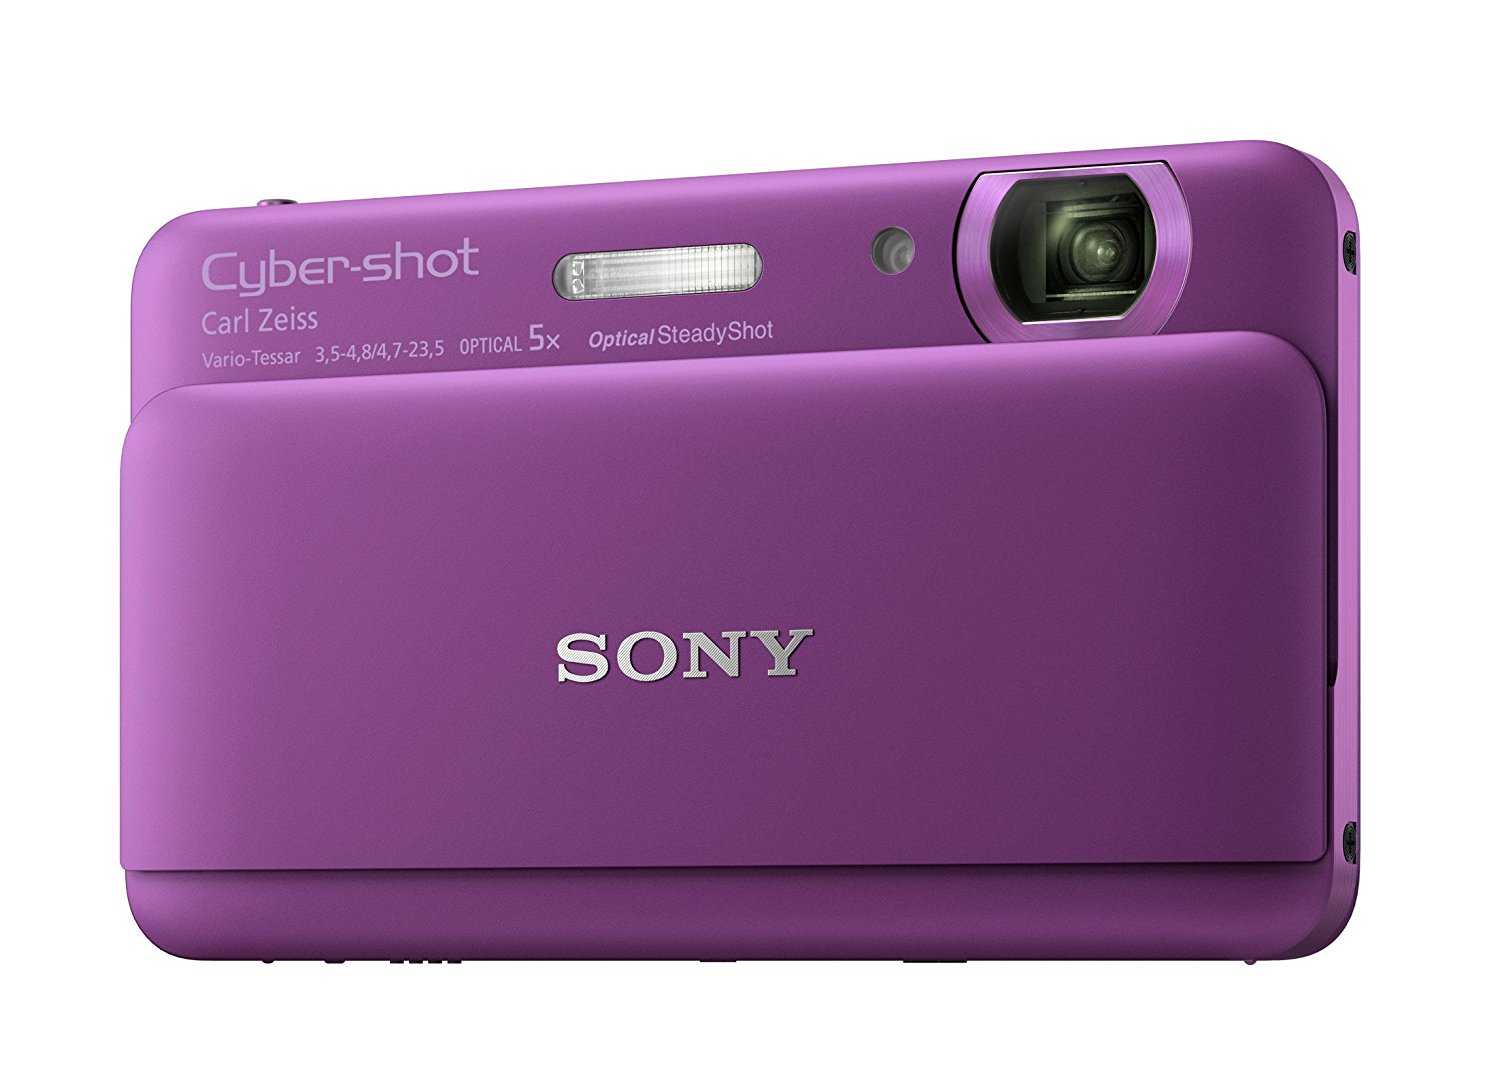 Sony cyber-shot dsc-tx55 - купить  в минск, скидки, цена, отзывы, обзор, характеристики - фотоаппараты цифровые